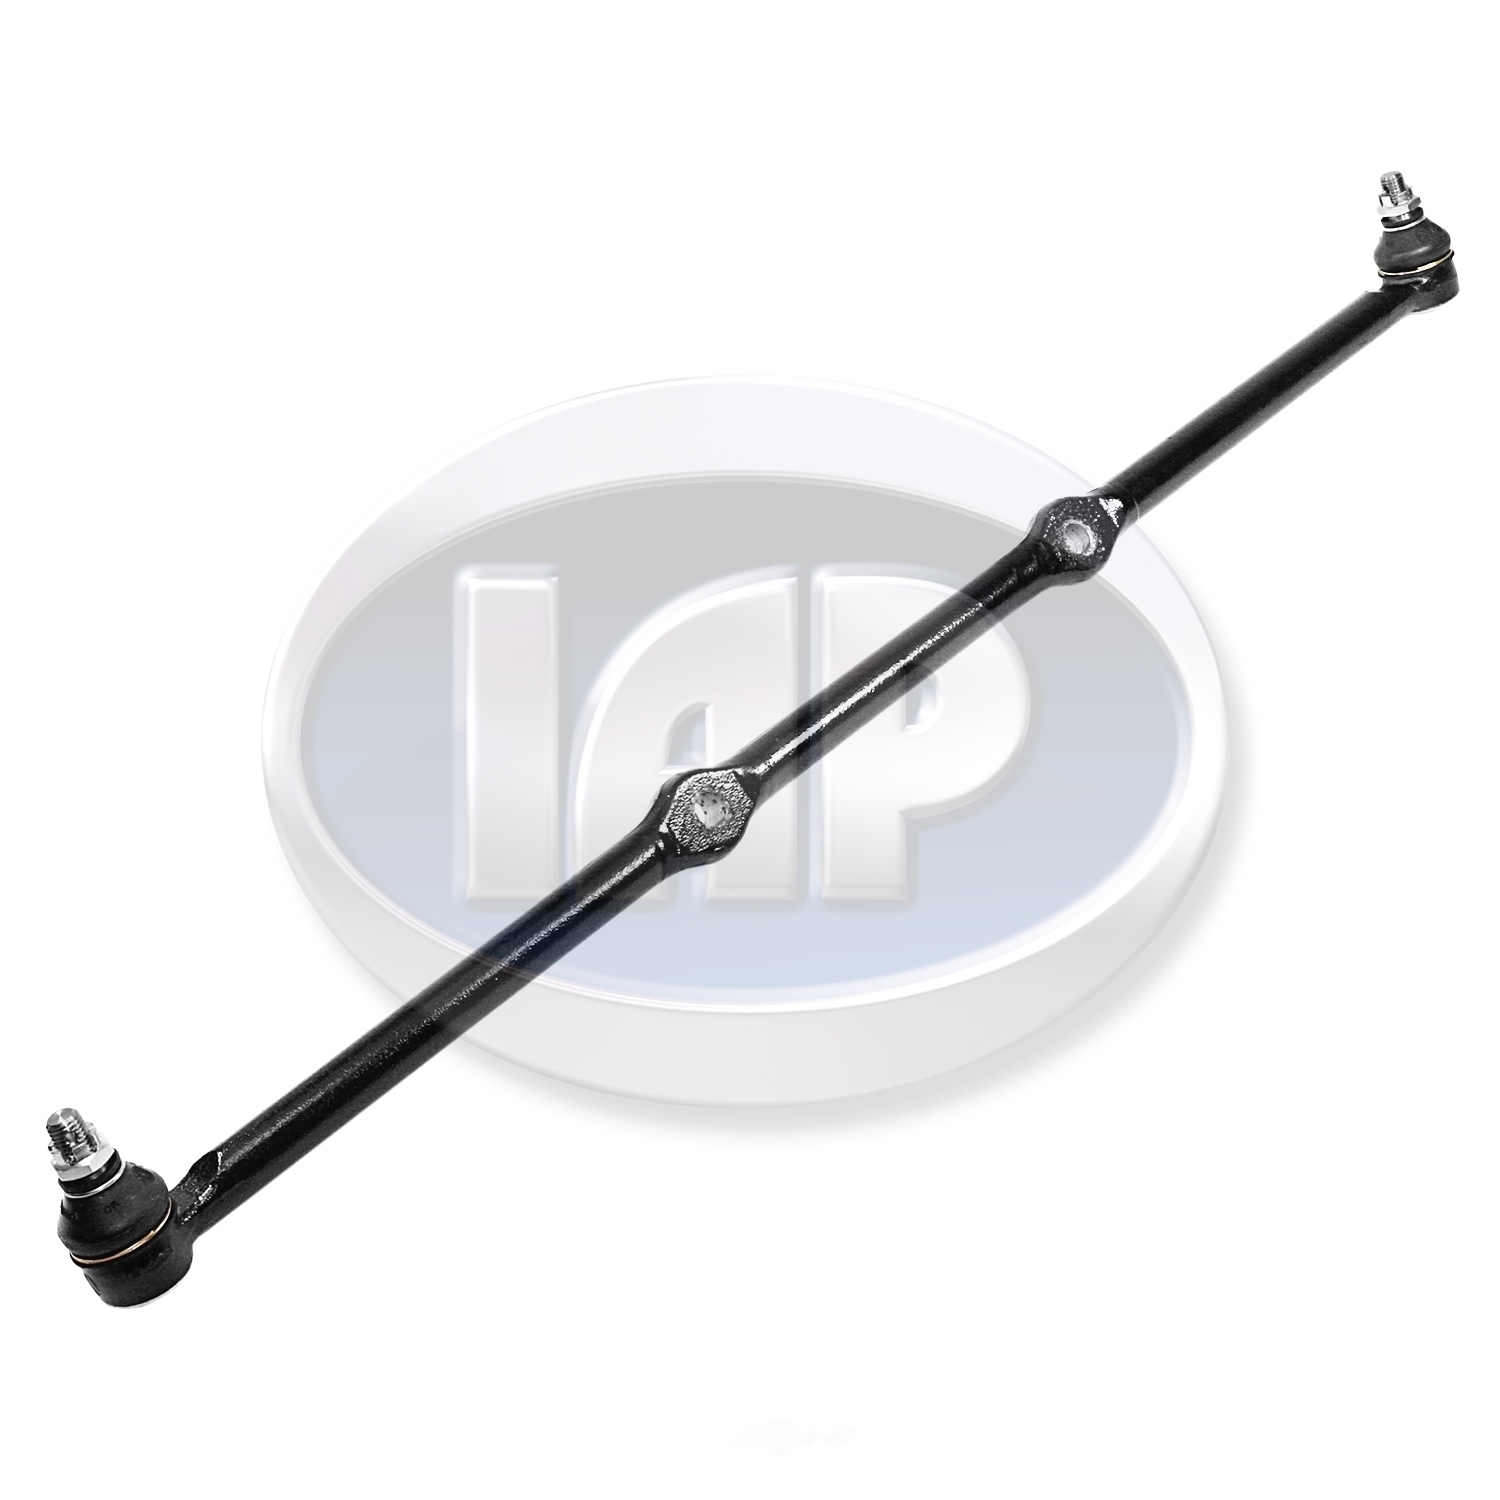 IAP/KUHLTEK MOTORWERKS - Steering Tie Rod - KMS 133415303